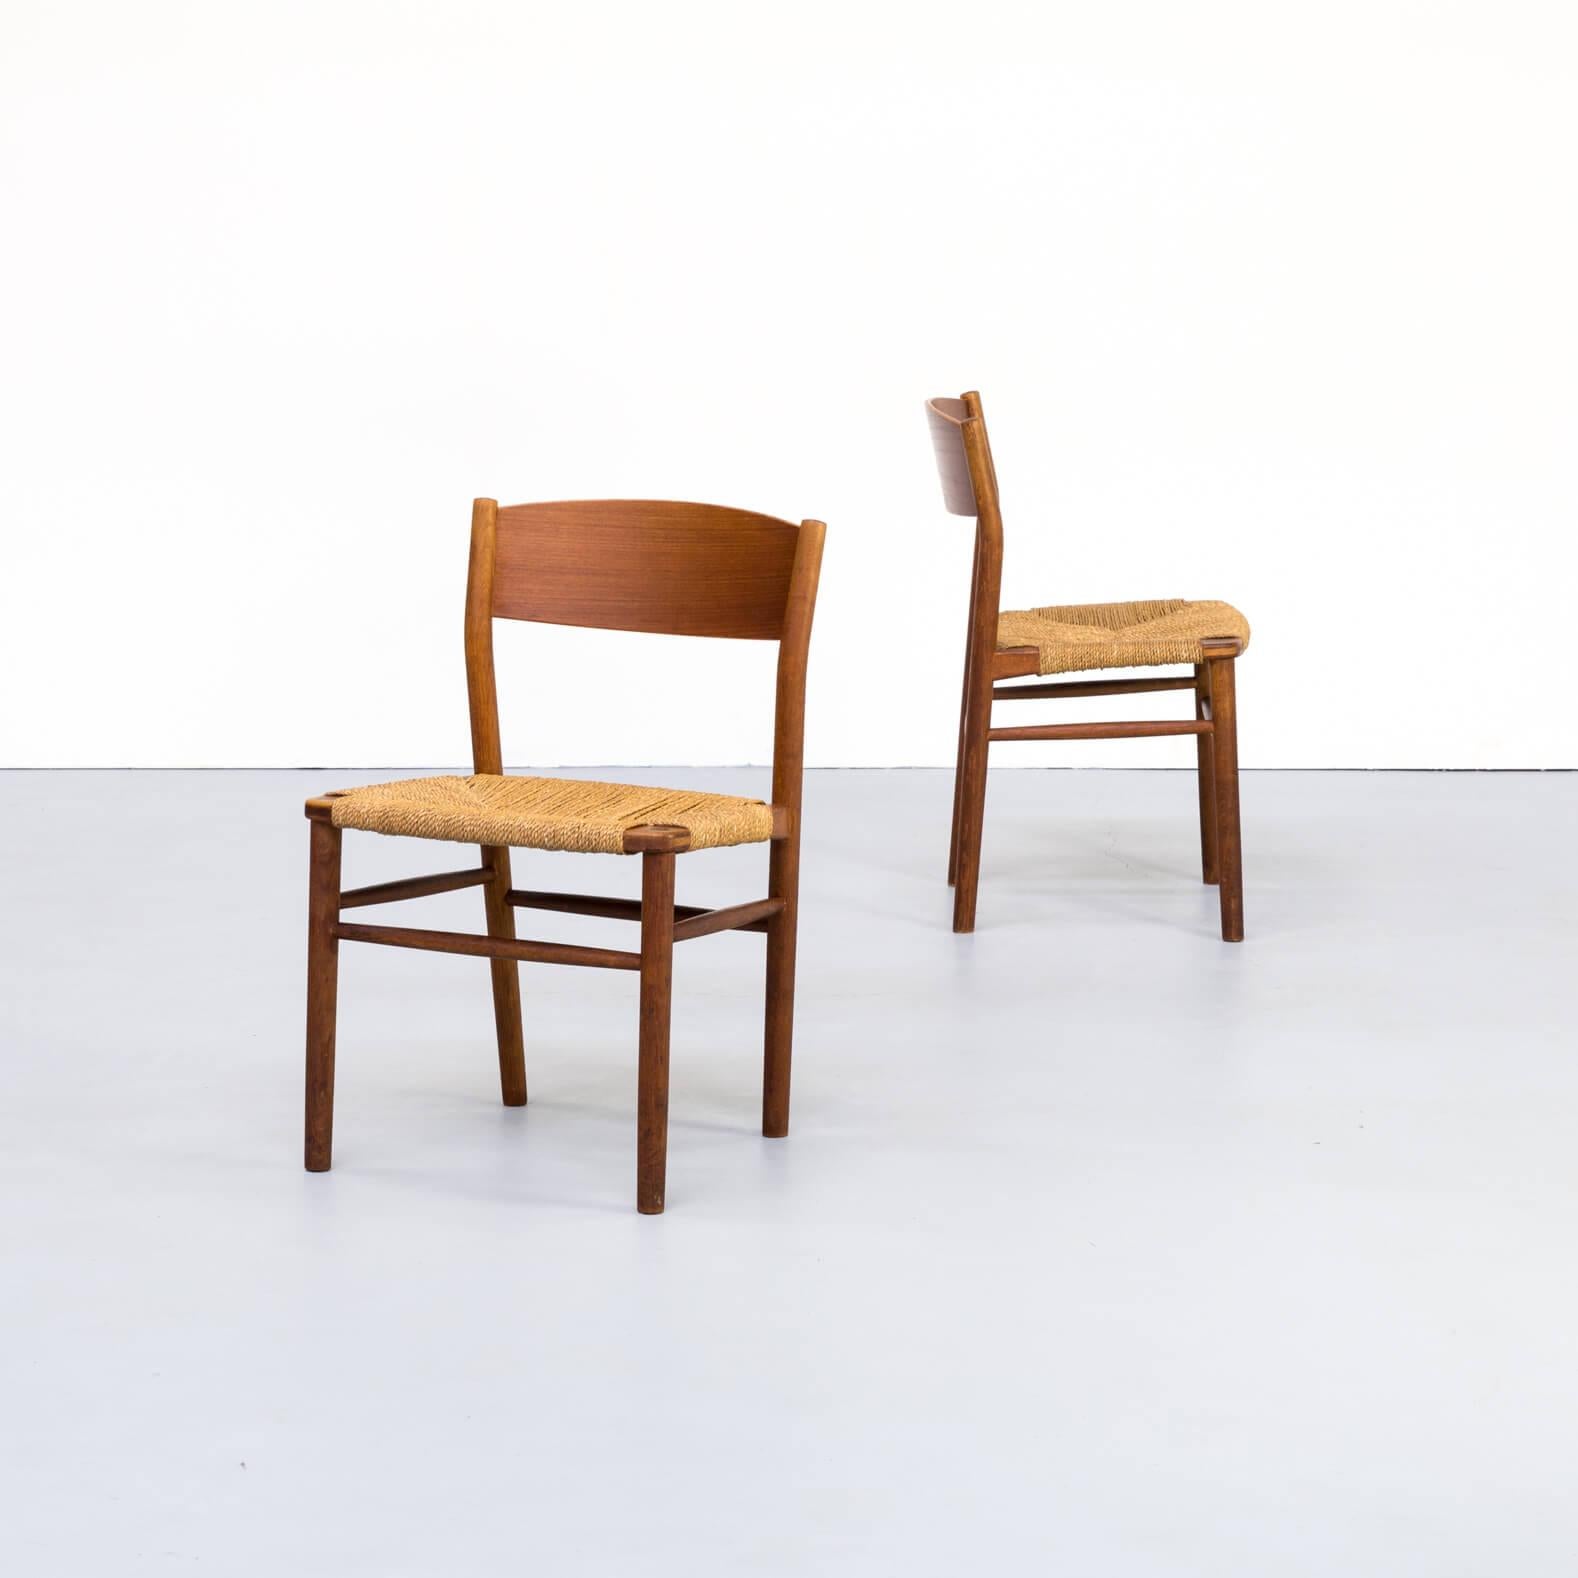 Designer Børge Mogensen was born in Aalborg, Denmark in 1914. He studied furniture design at the Copenhagen School of Arts & Crafts under esteemed Professor Kaare Klint from 1936–1938. Next, he studied at the School of Furniture at the Royal Academy